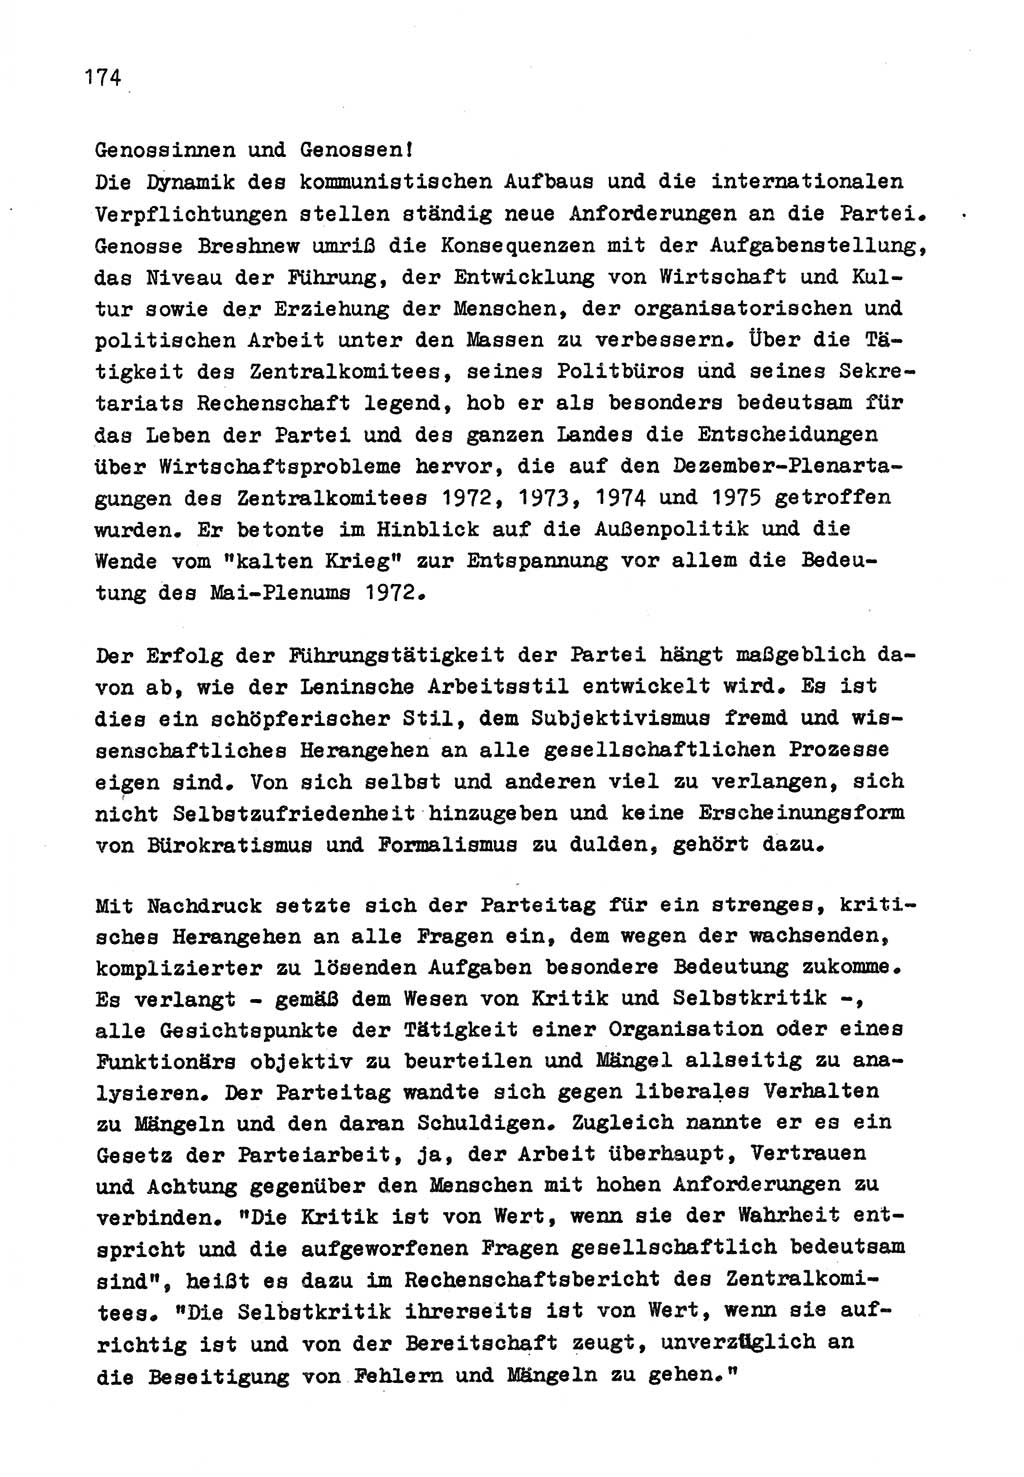 Zu Fragen der Parteiarbeit [Sozialistische Einheitspartei Deutschlands (SED) Deutsche Demokratische Republik (DDR)] 1979, Seite 174 (Fr. PA SED DDR 1979, S. 174)